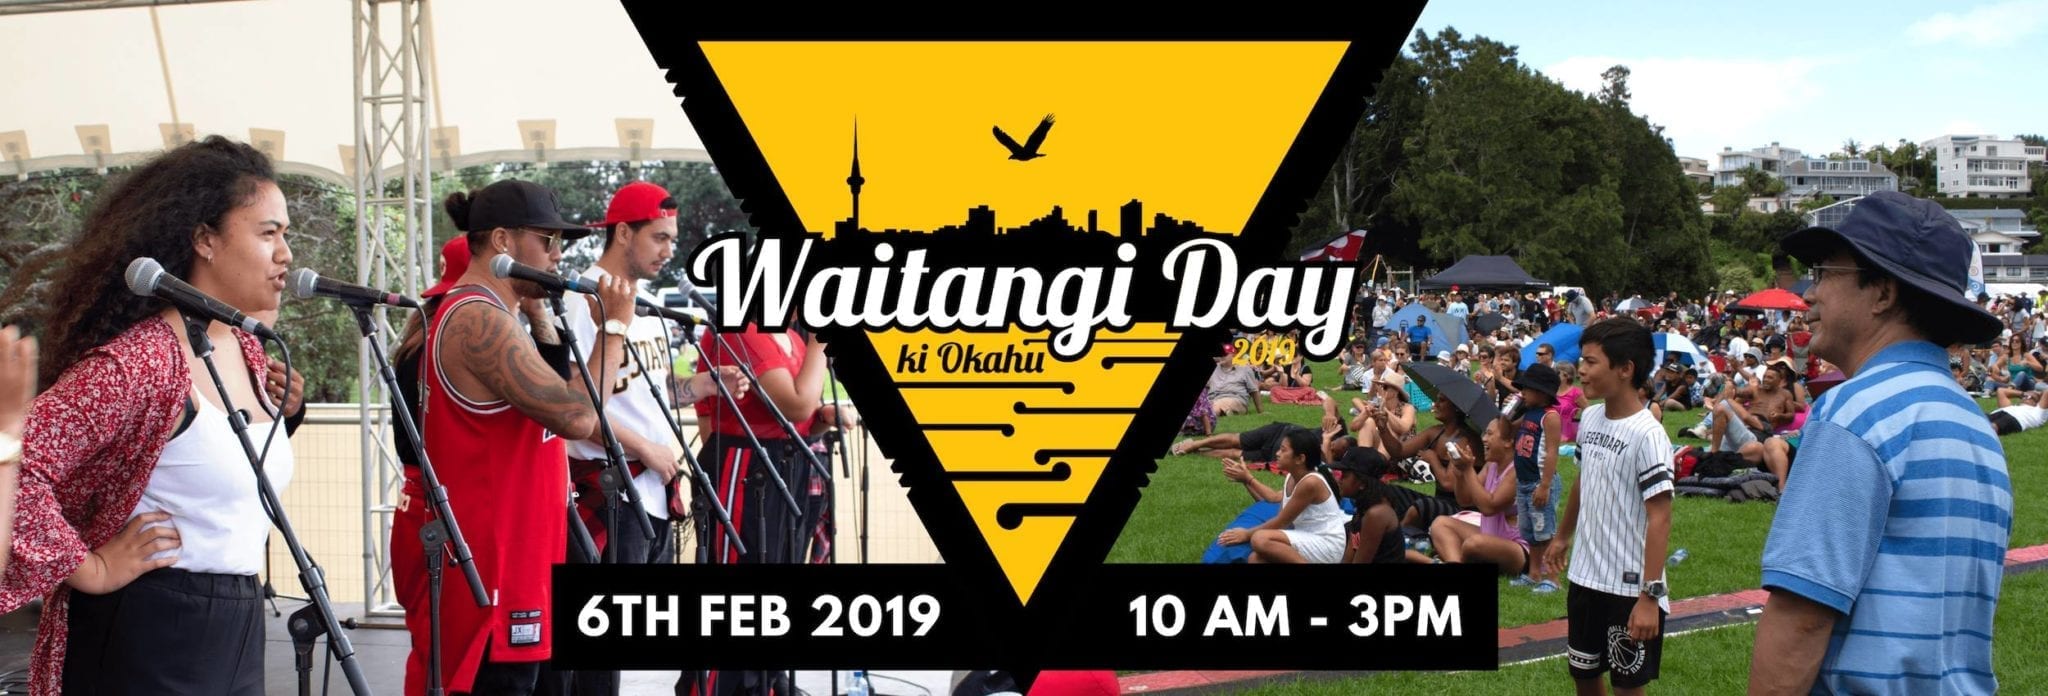 2019 Waitangi Day Ki Okahu